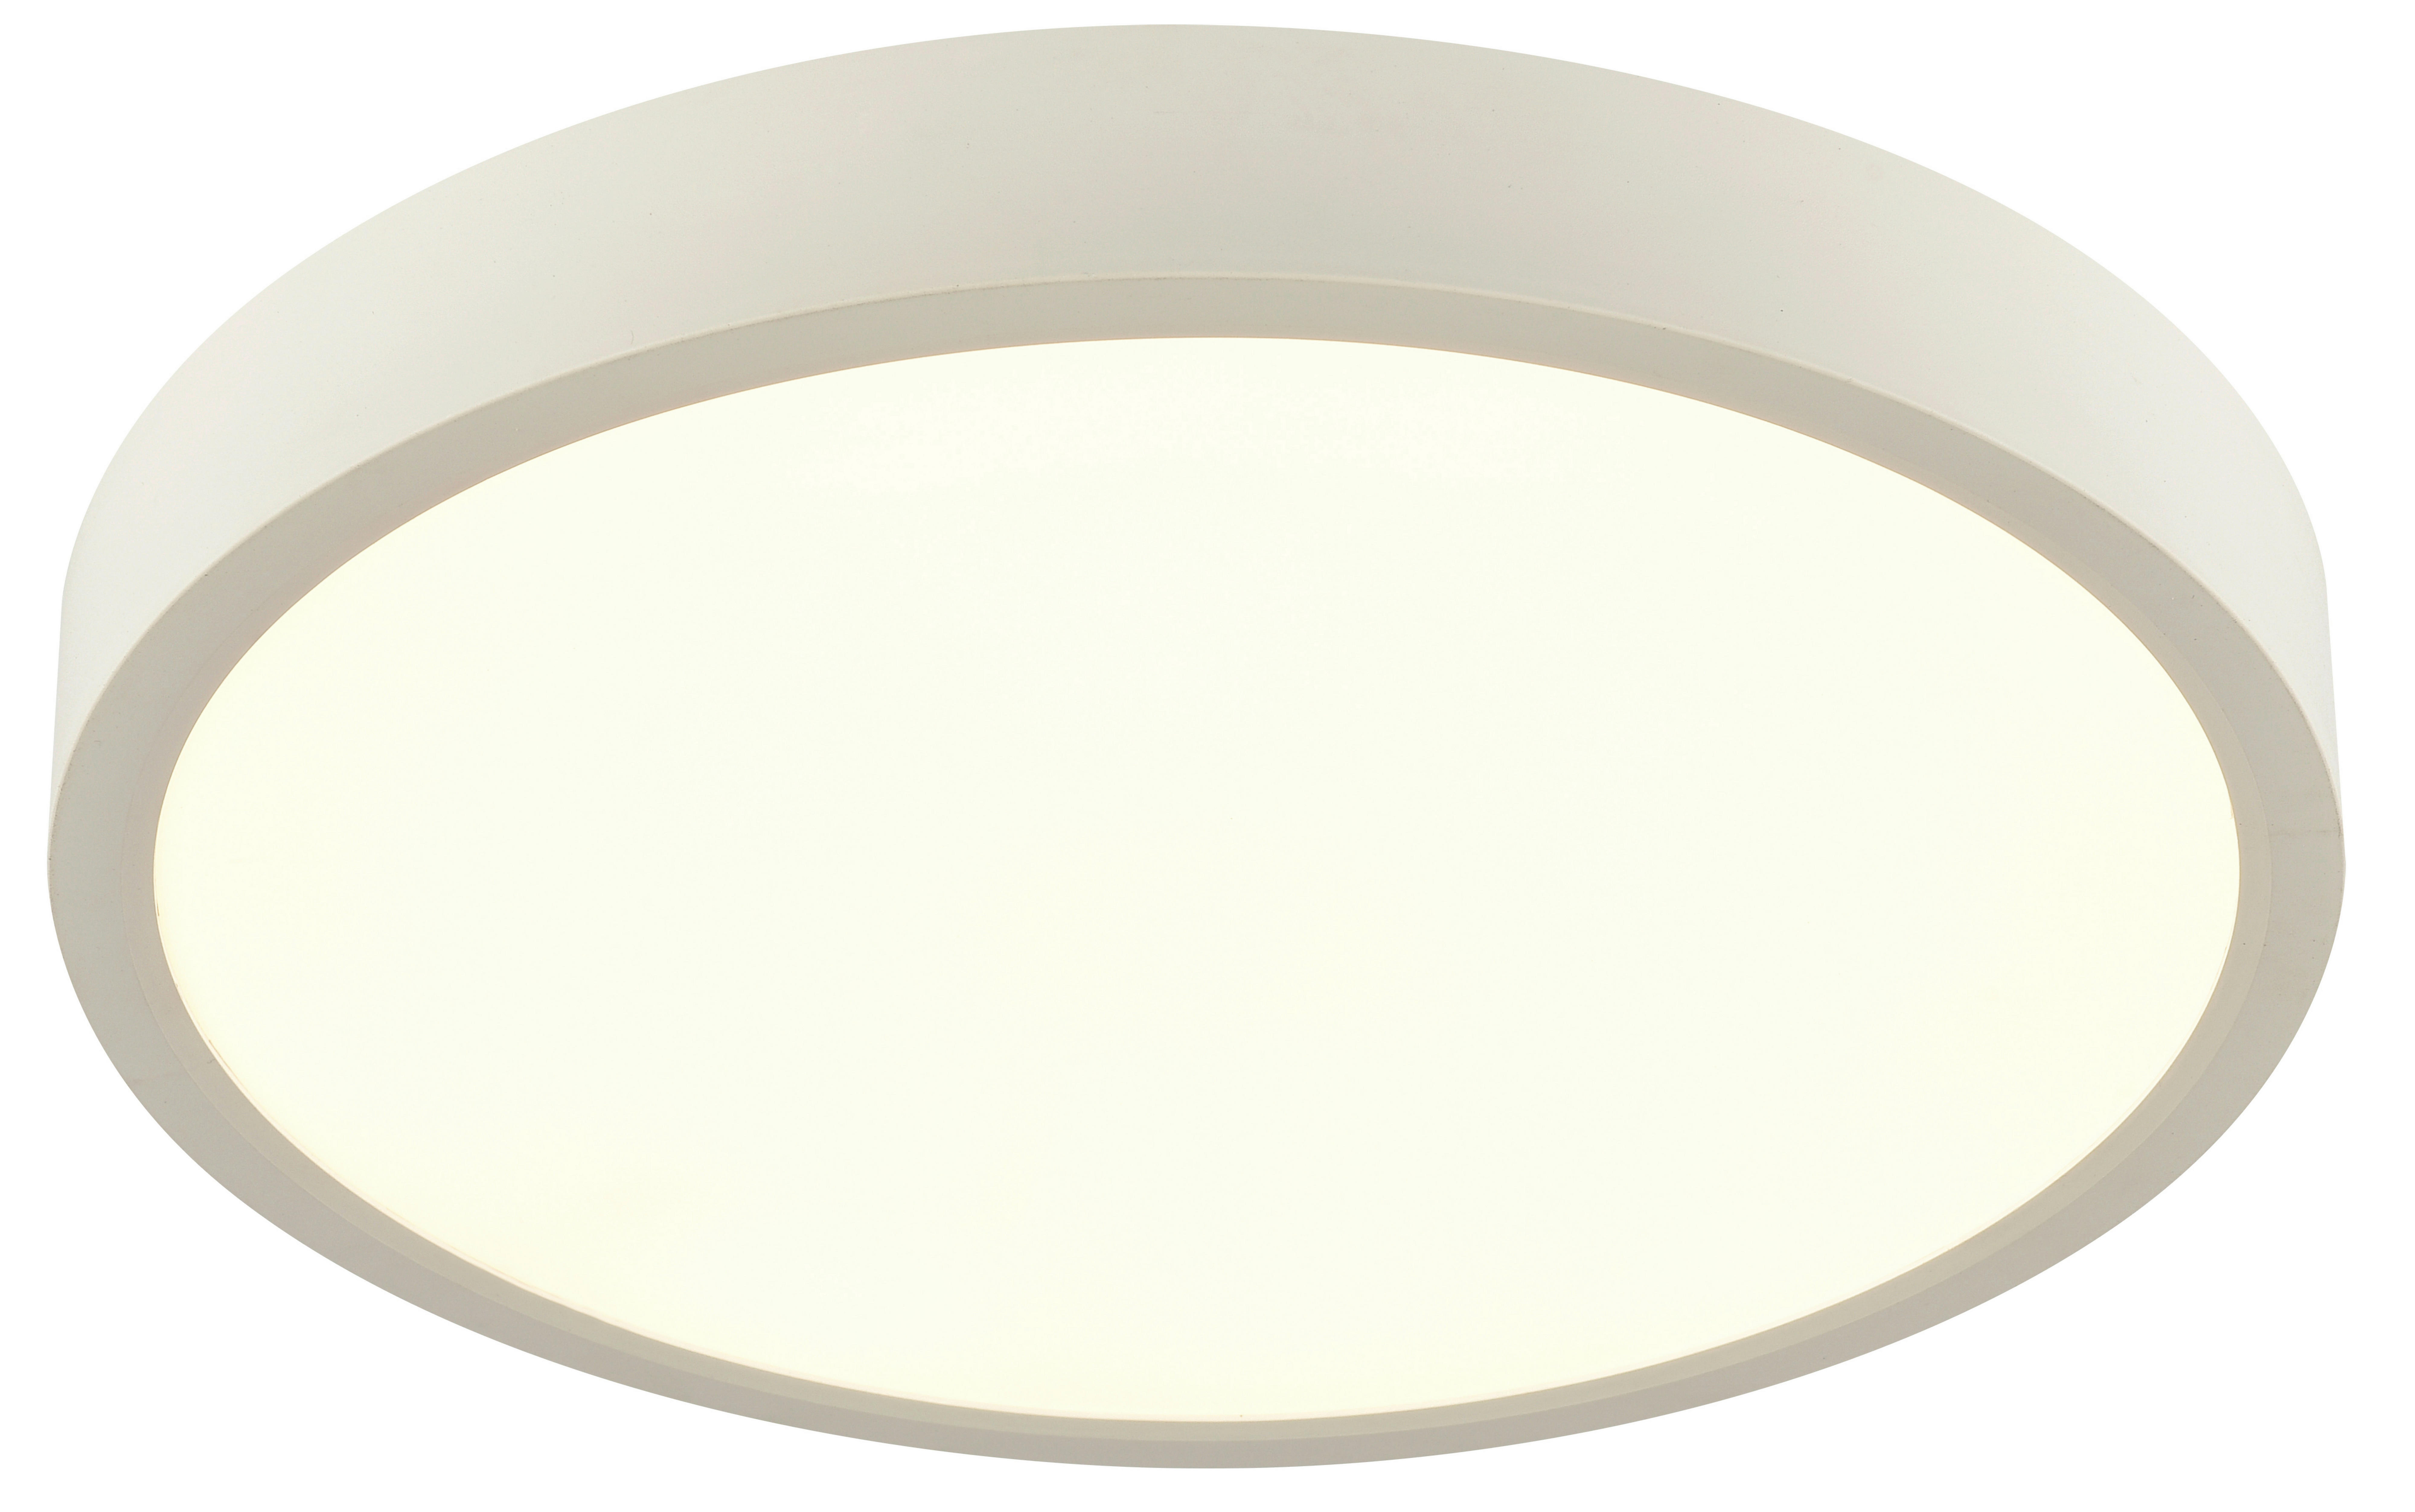 LED-DECKENLEUCHTE 20 W  30/3,6 cm    - Weiß, KONVENTIONELL, Kunststoff (30/3,6cm) - Boxxx